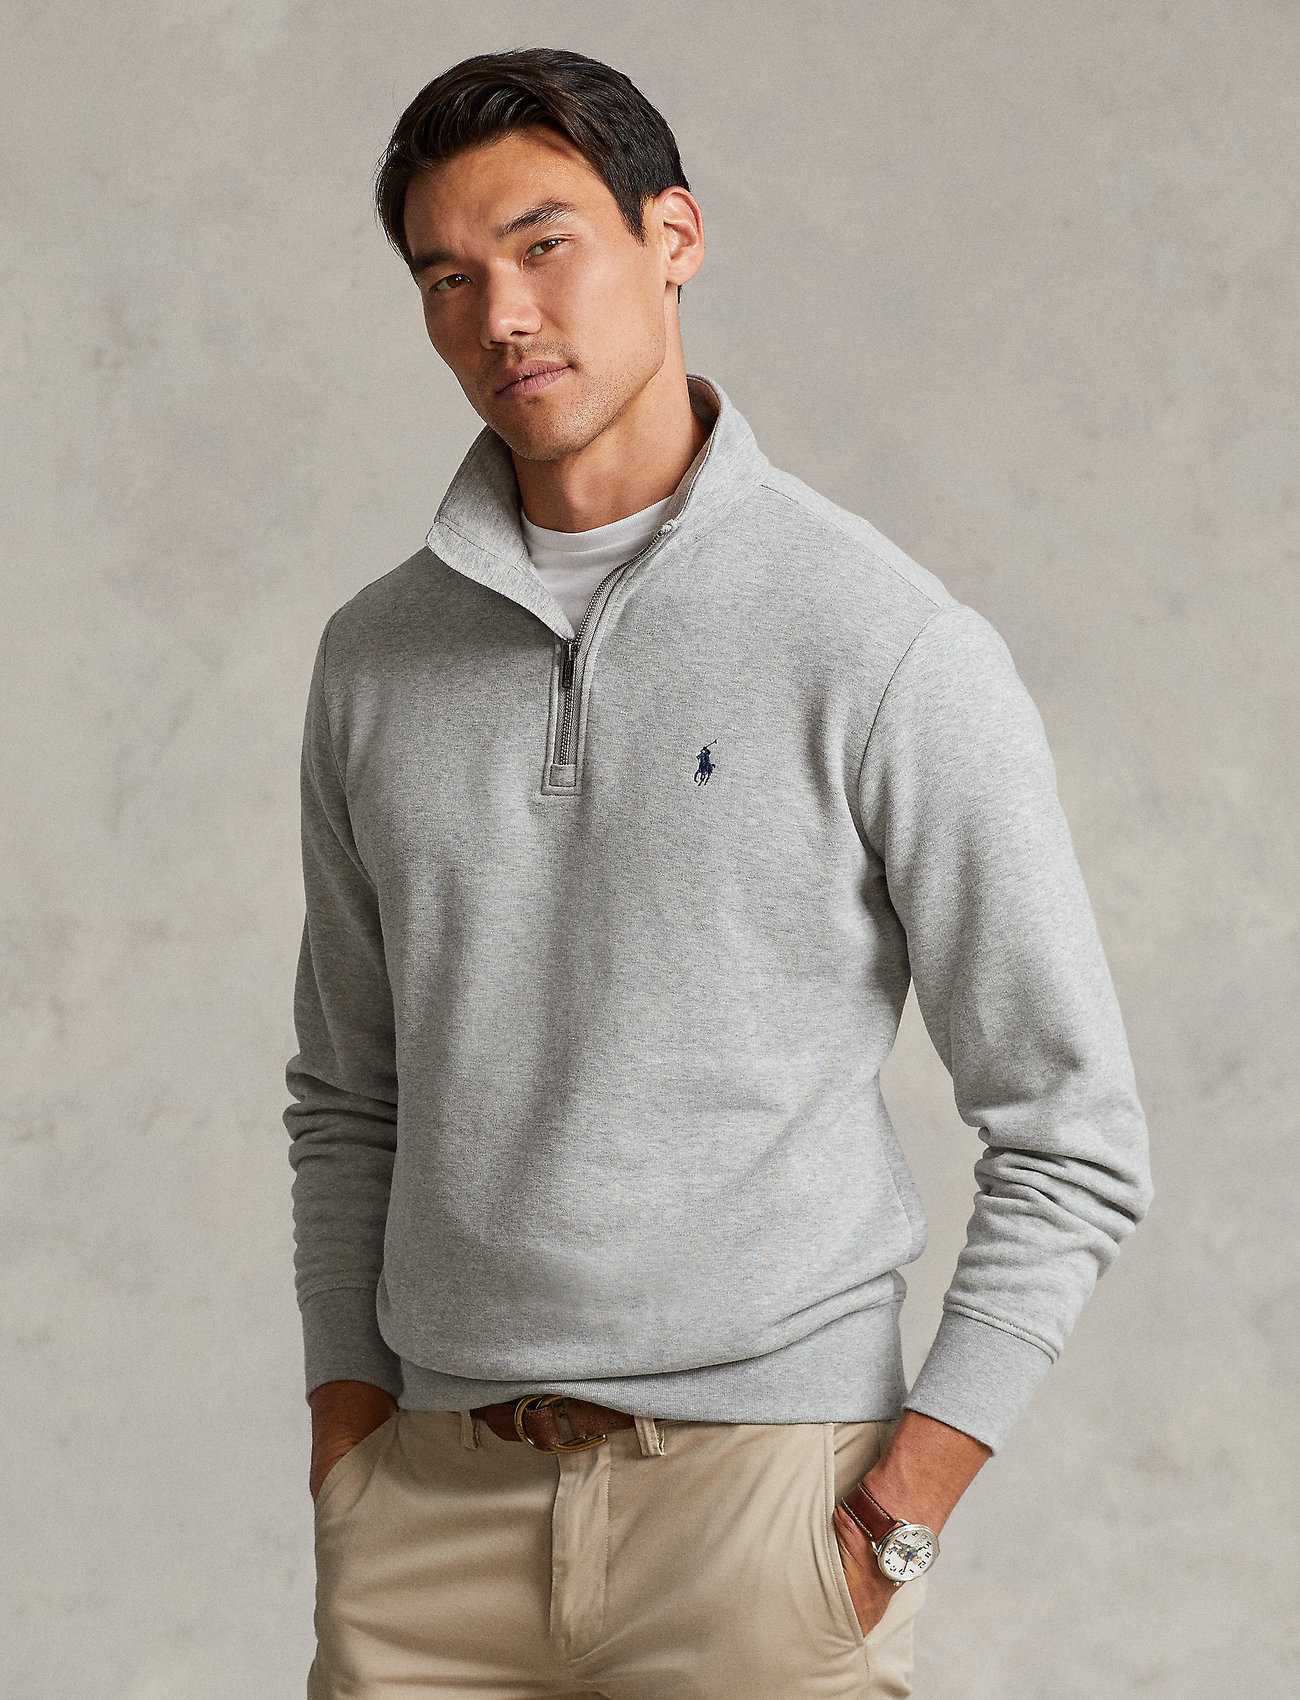 Polo Ralph Lauren The Rl Fleece Sweatshirt - Sweatshirts 